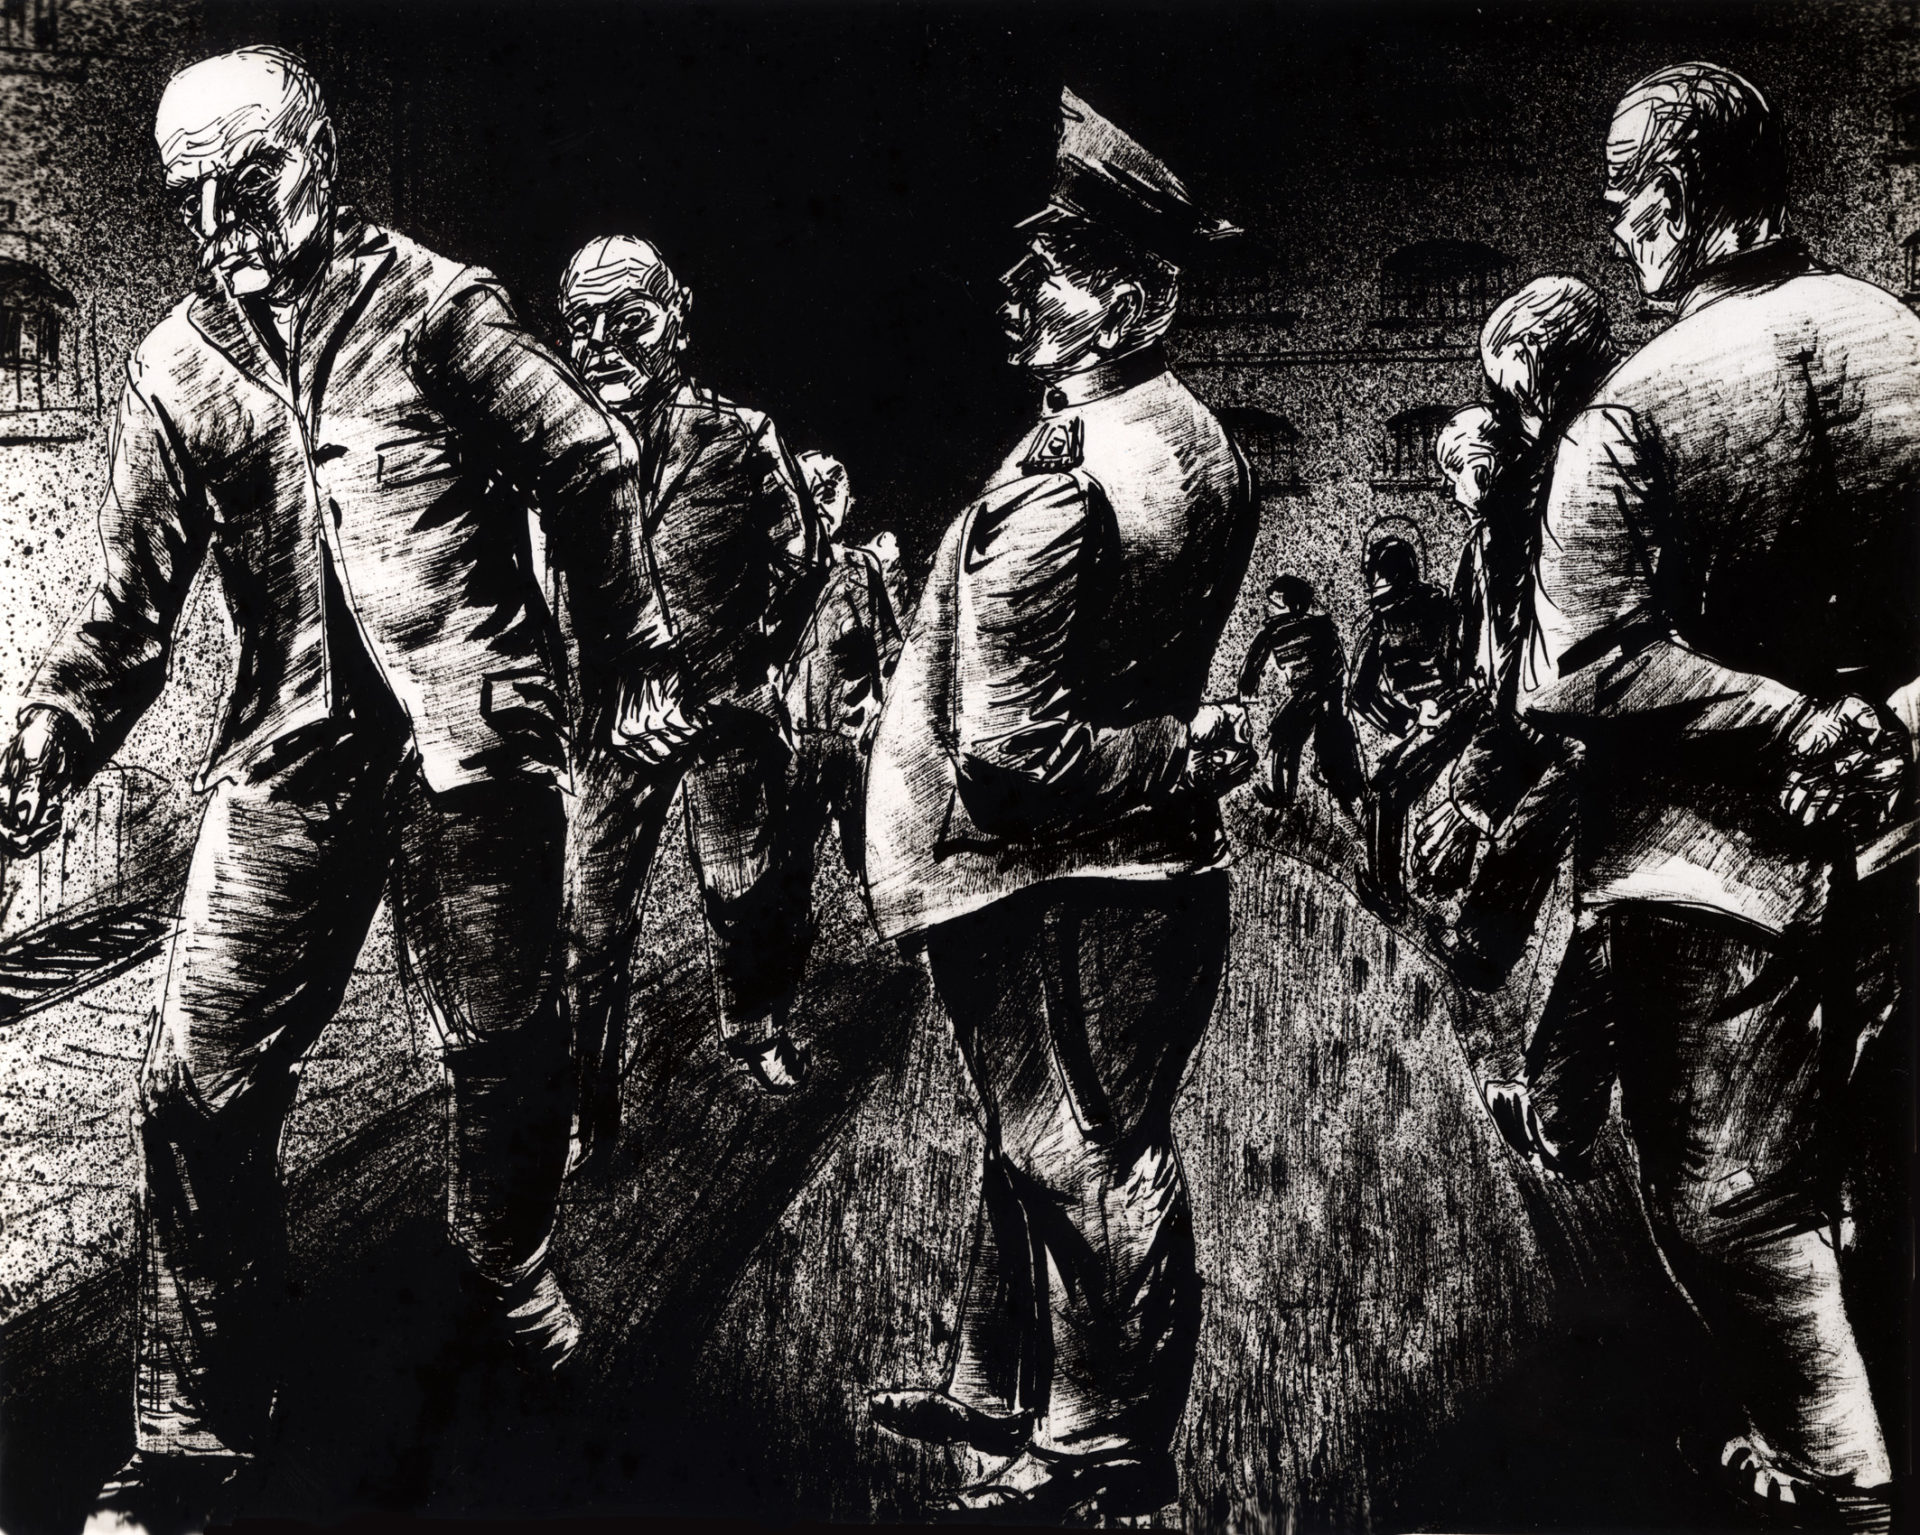 Diese Zeichnung von Karl Schwesig trägt den Untertitel "Spaziergang eine halbe Stunde täglich" und ist nach seiner ersten Inhaftierung in der Ulmer Höh' entstanden. Bild: ehem. Galerie Remmert und Barth, Düsseldorf